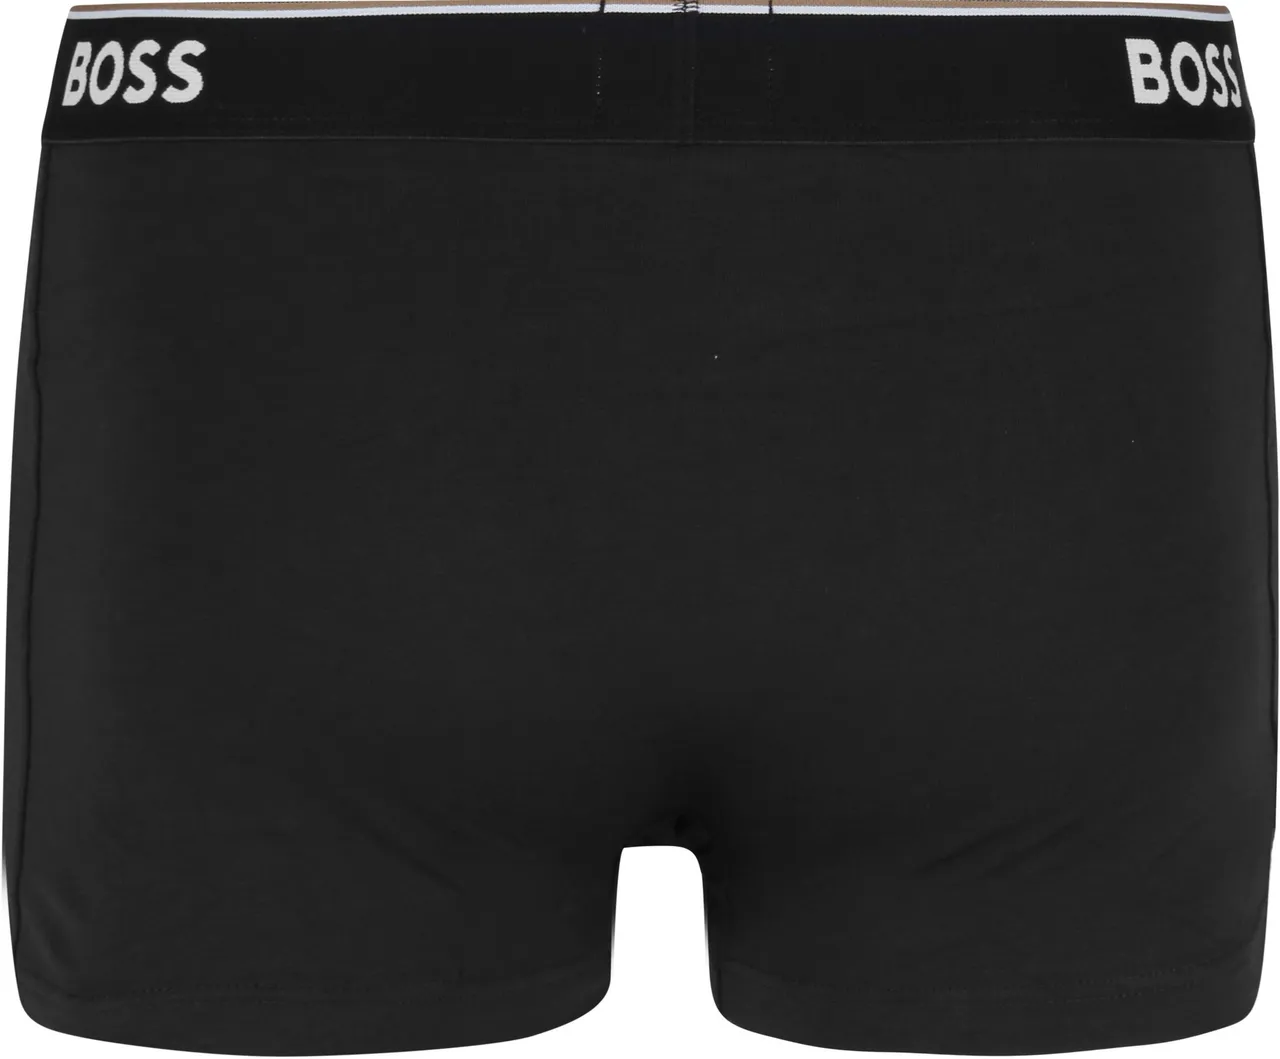 BOSS Short Boxer Shorts Power 3-Pack 001 Black